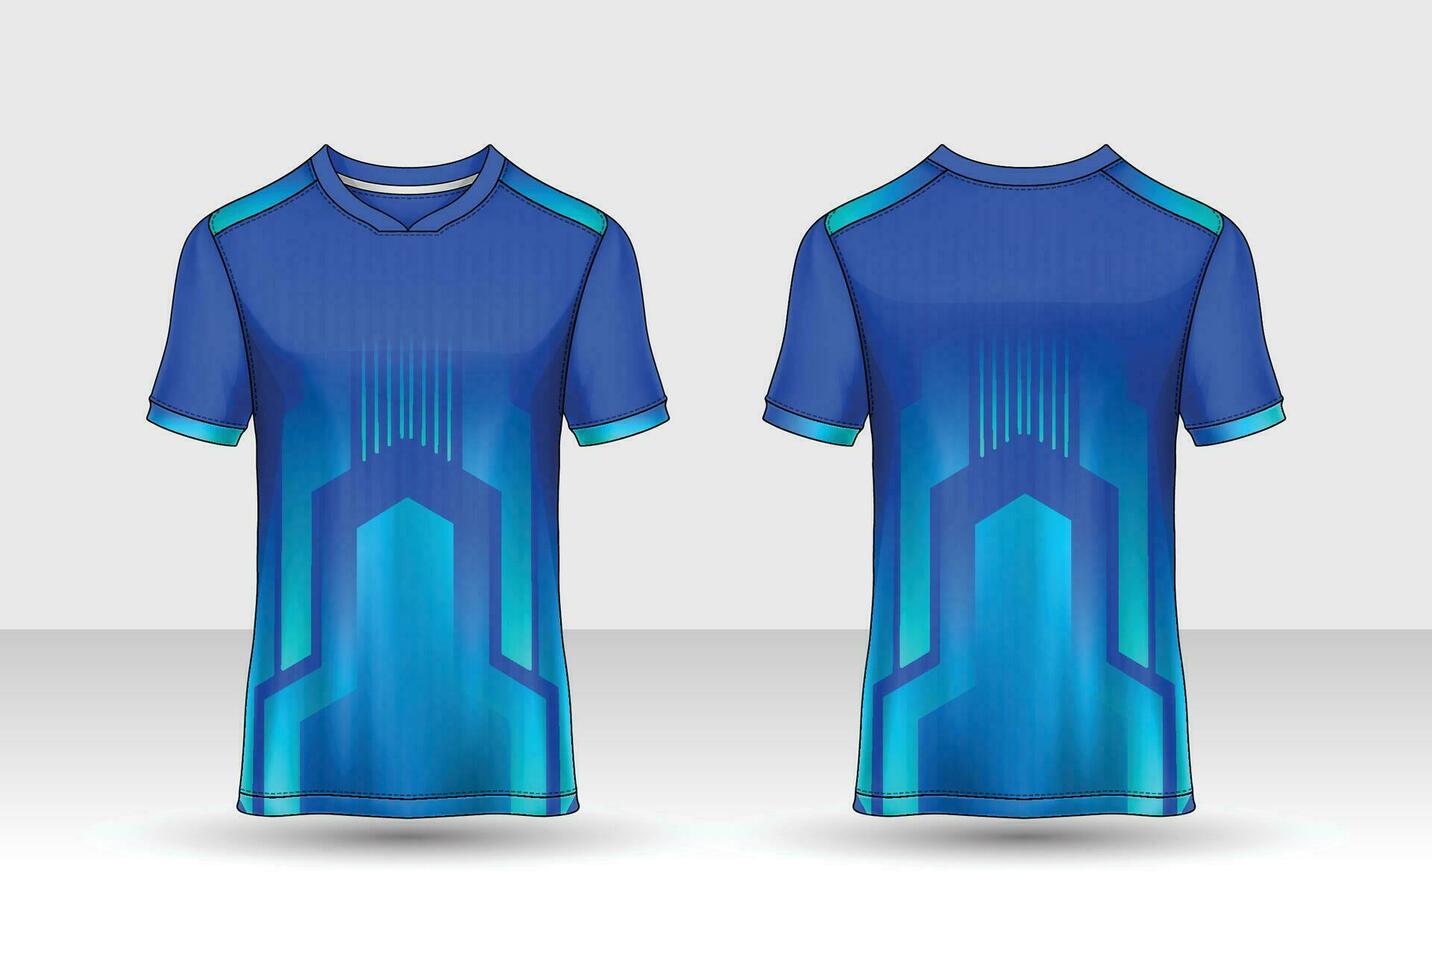 t-shirt sport ontwerpsjabloon, voetbal jersey mockup voor voetbalclub. uniform voor- en achteraanzicht. vector